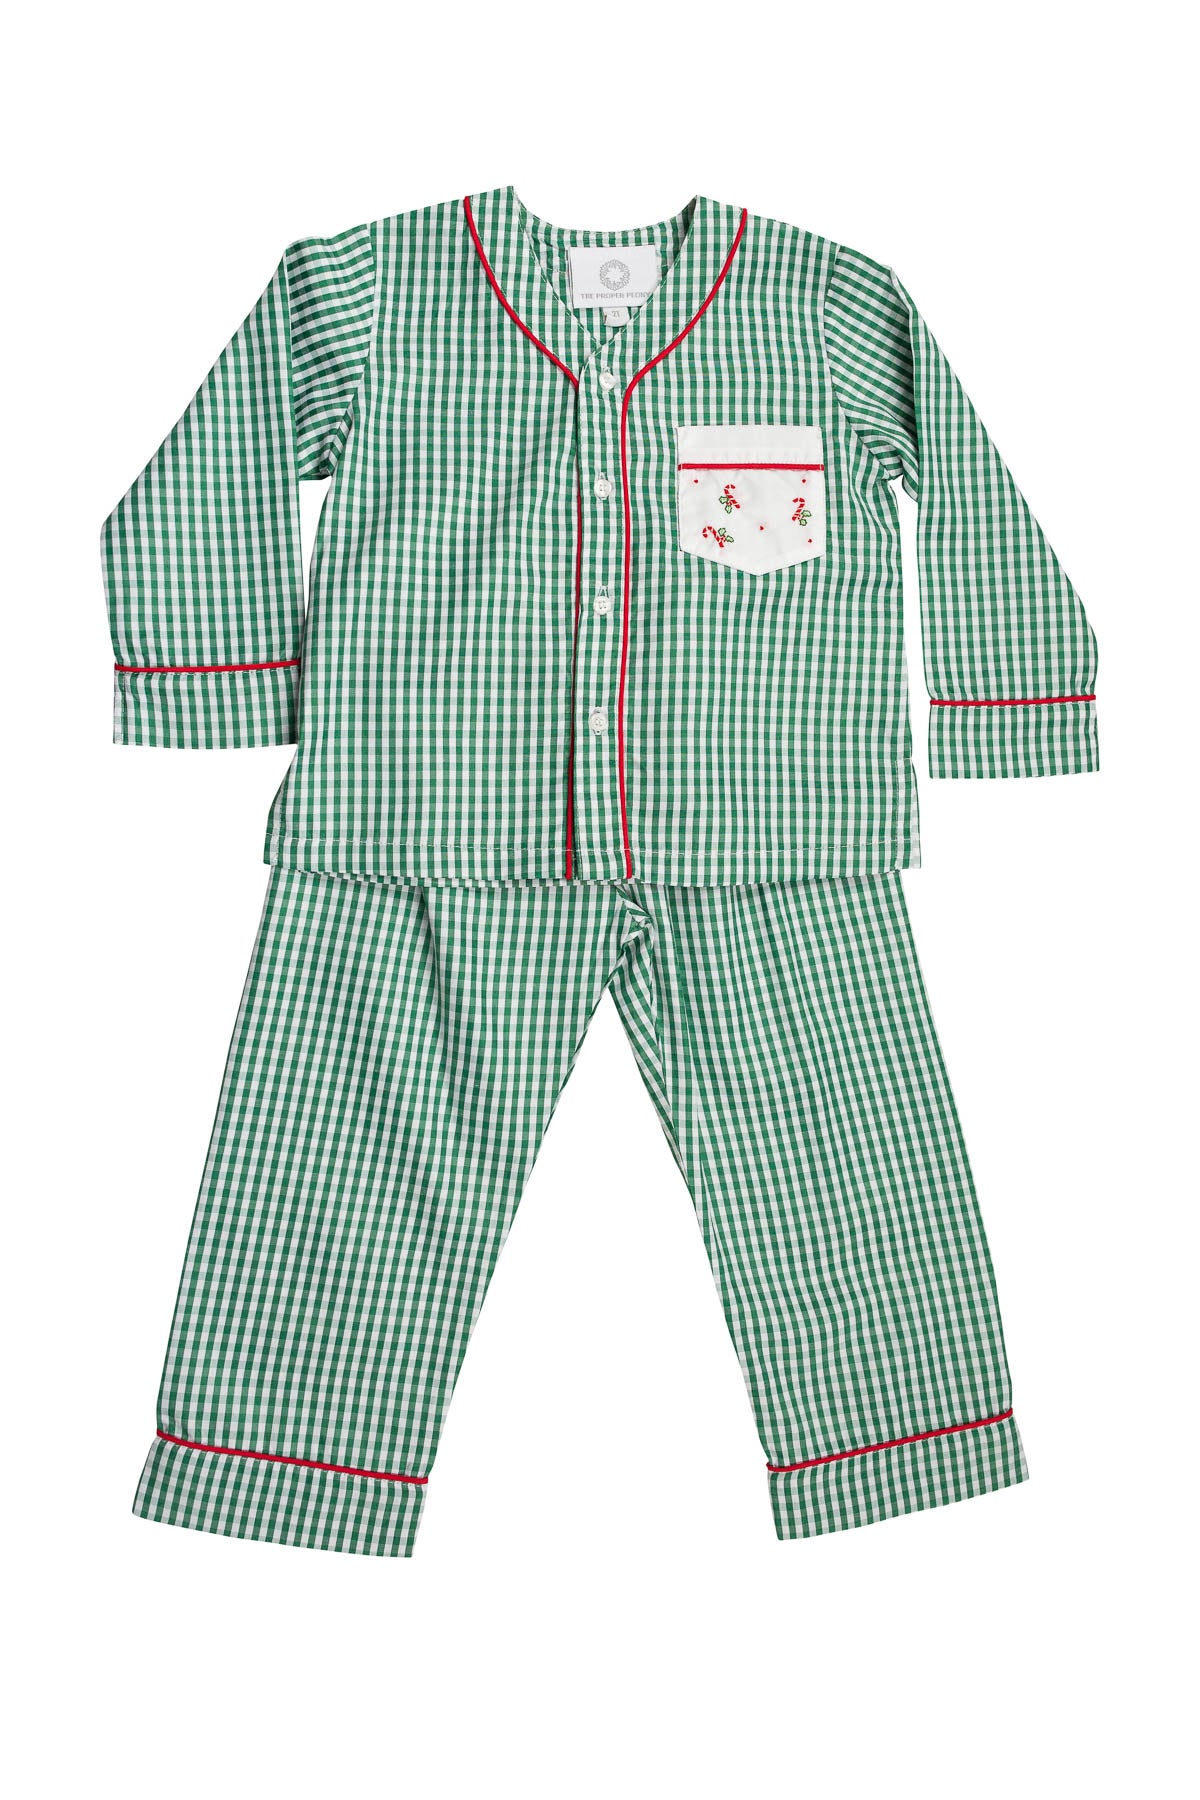 Candy Cane Loungewear Boy Pant Set (Toddler)